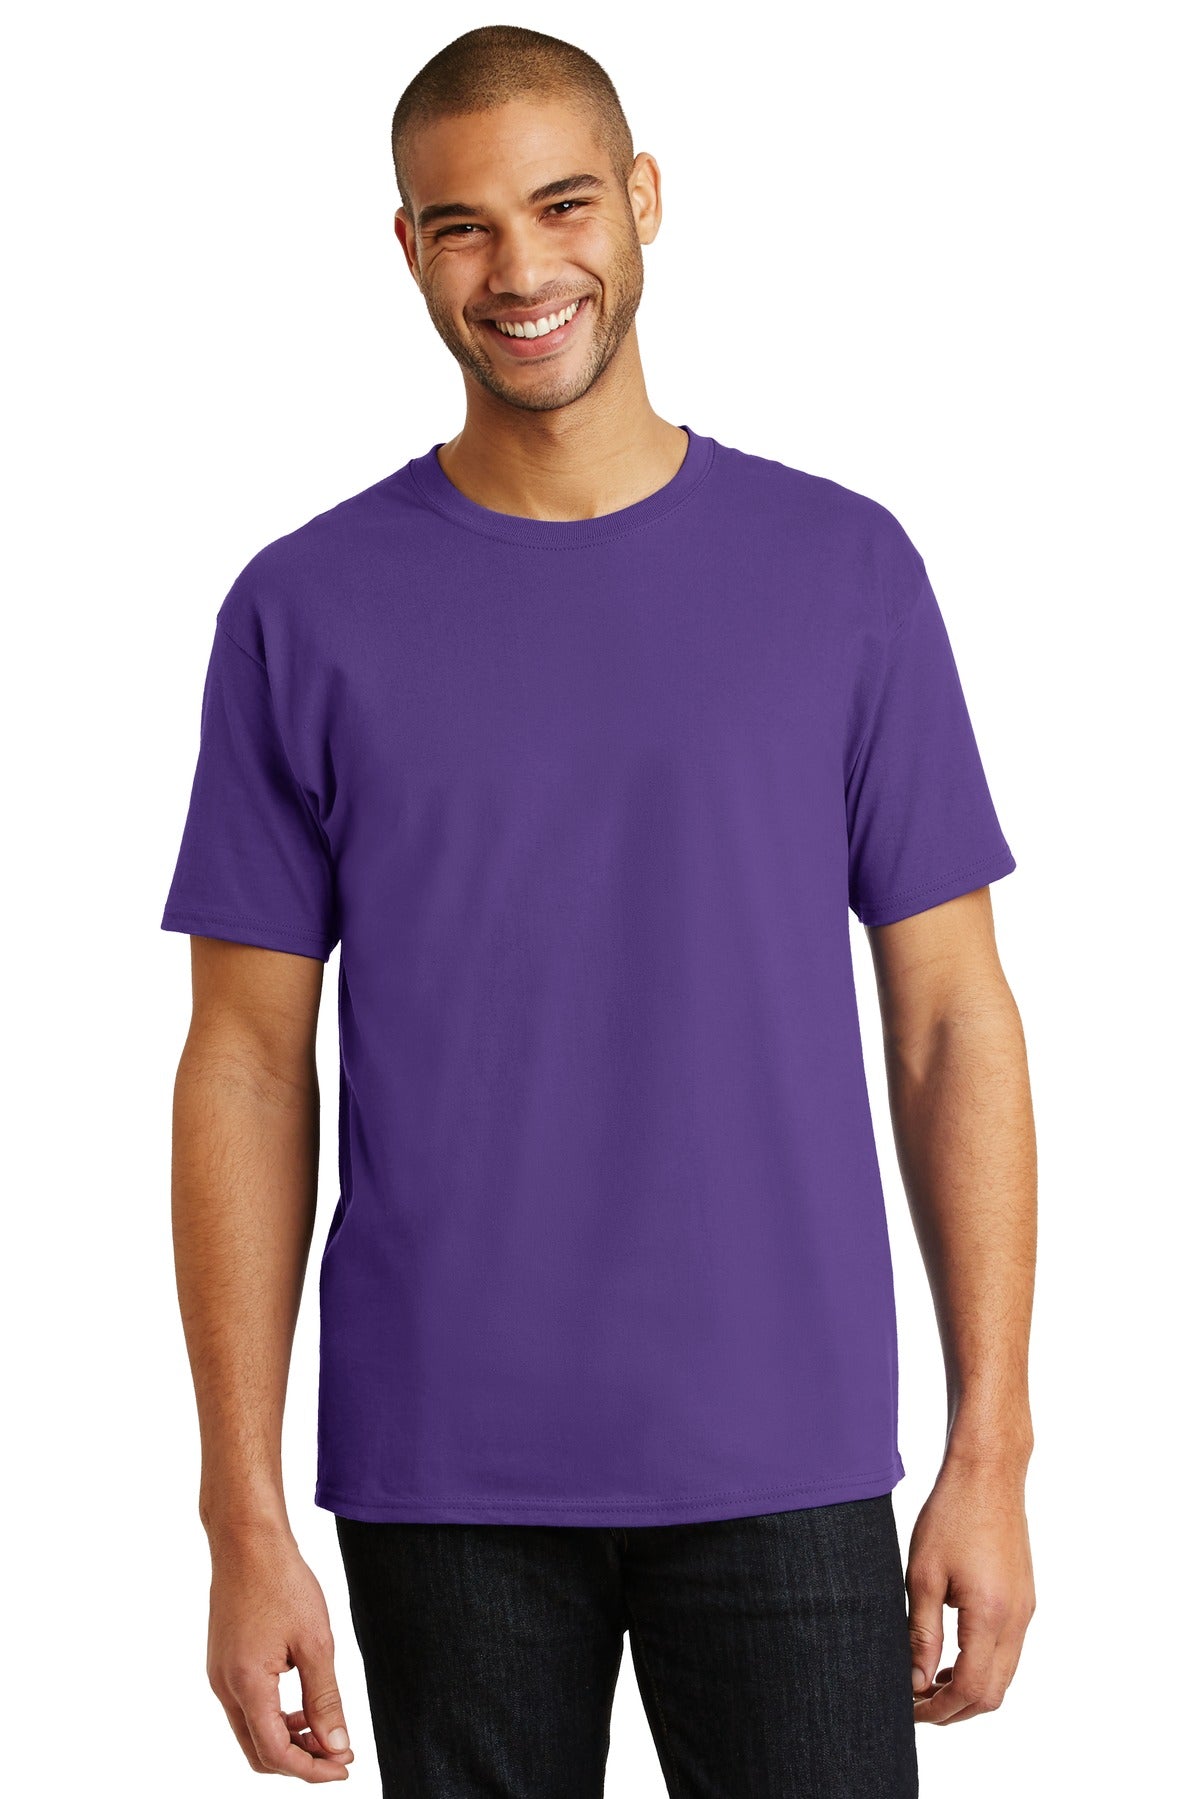 Hanes® - Authentic 100% Cotton T-Shirt. 5250 [Purple] - DFW Impression